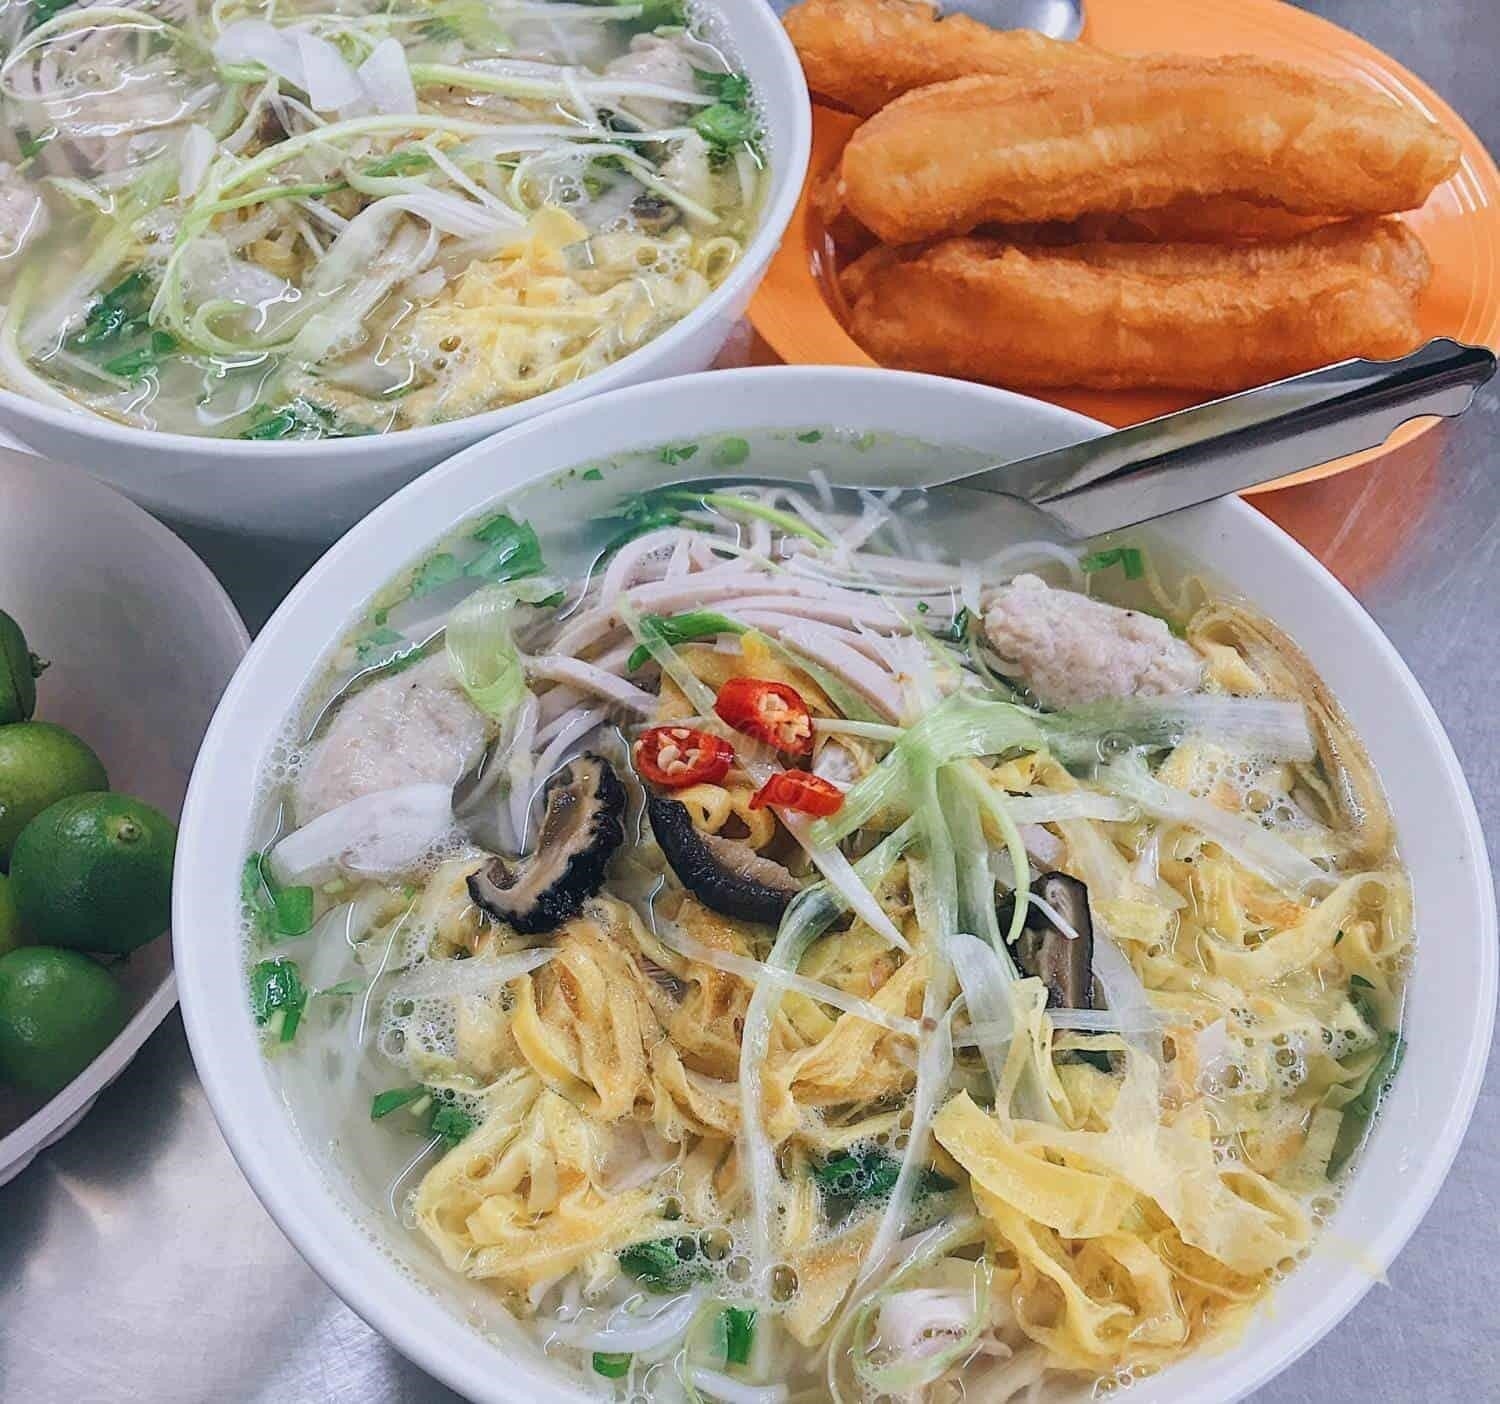 Bún thang Cầu Gỗ là một món ăn truyền thống nổi tiếng của Hà Nội, được biết đến với hương vị đặc trưng và cách trình bày đẹp mắt. Món bún được làm từ bột gạo mềm mịn, kết hợp với các loại thịt, rau sống và nước dùng thơm ngon.